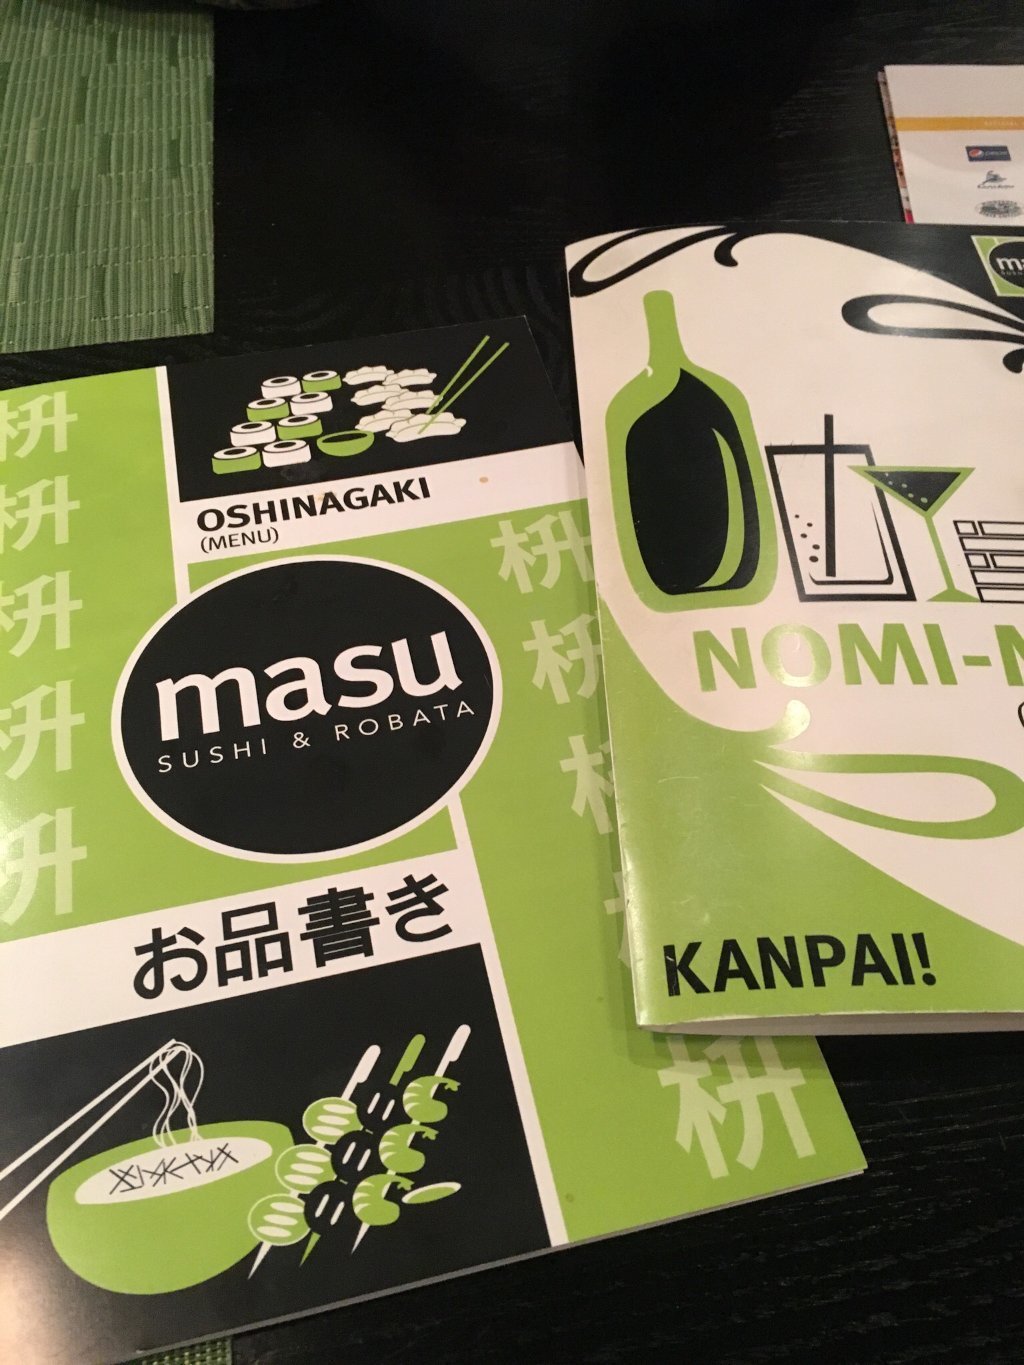 MASU Sushi & Robata